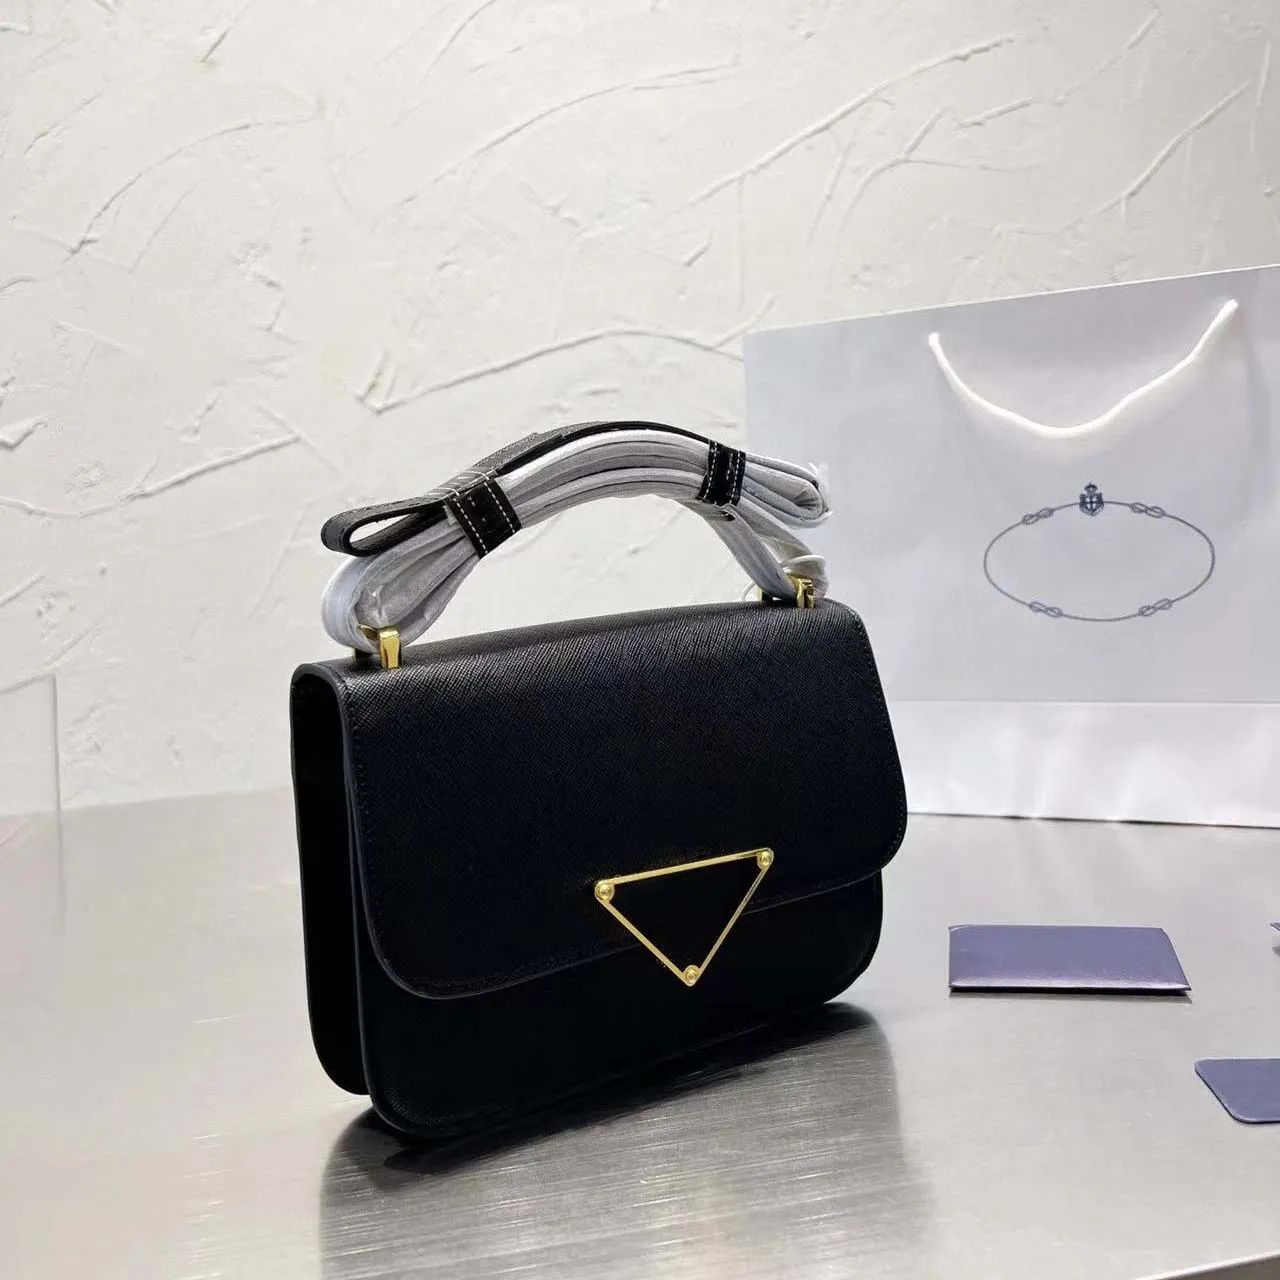 New Totebag Quality Designer Leather Embleme Saffiano Shoulder Bag Envelope Luxury Handbags Envelope Bag Crossbody Bag Purse Genuine Leather